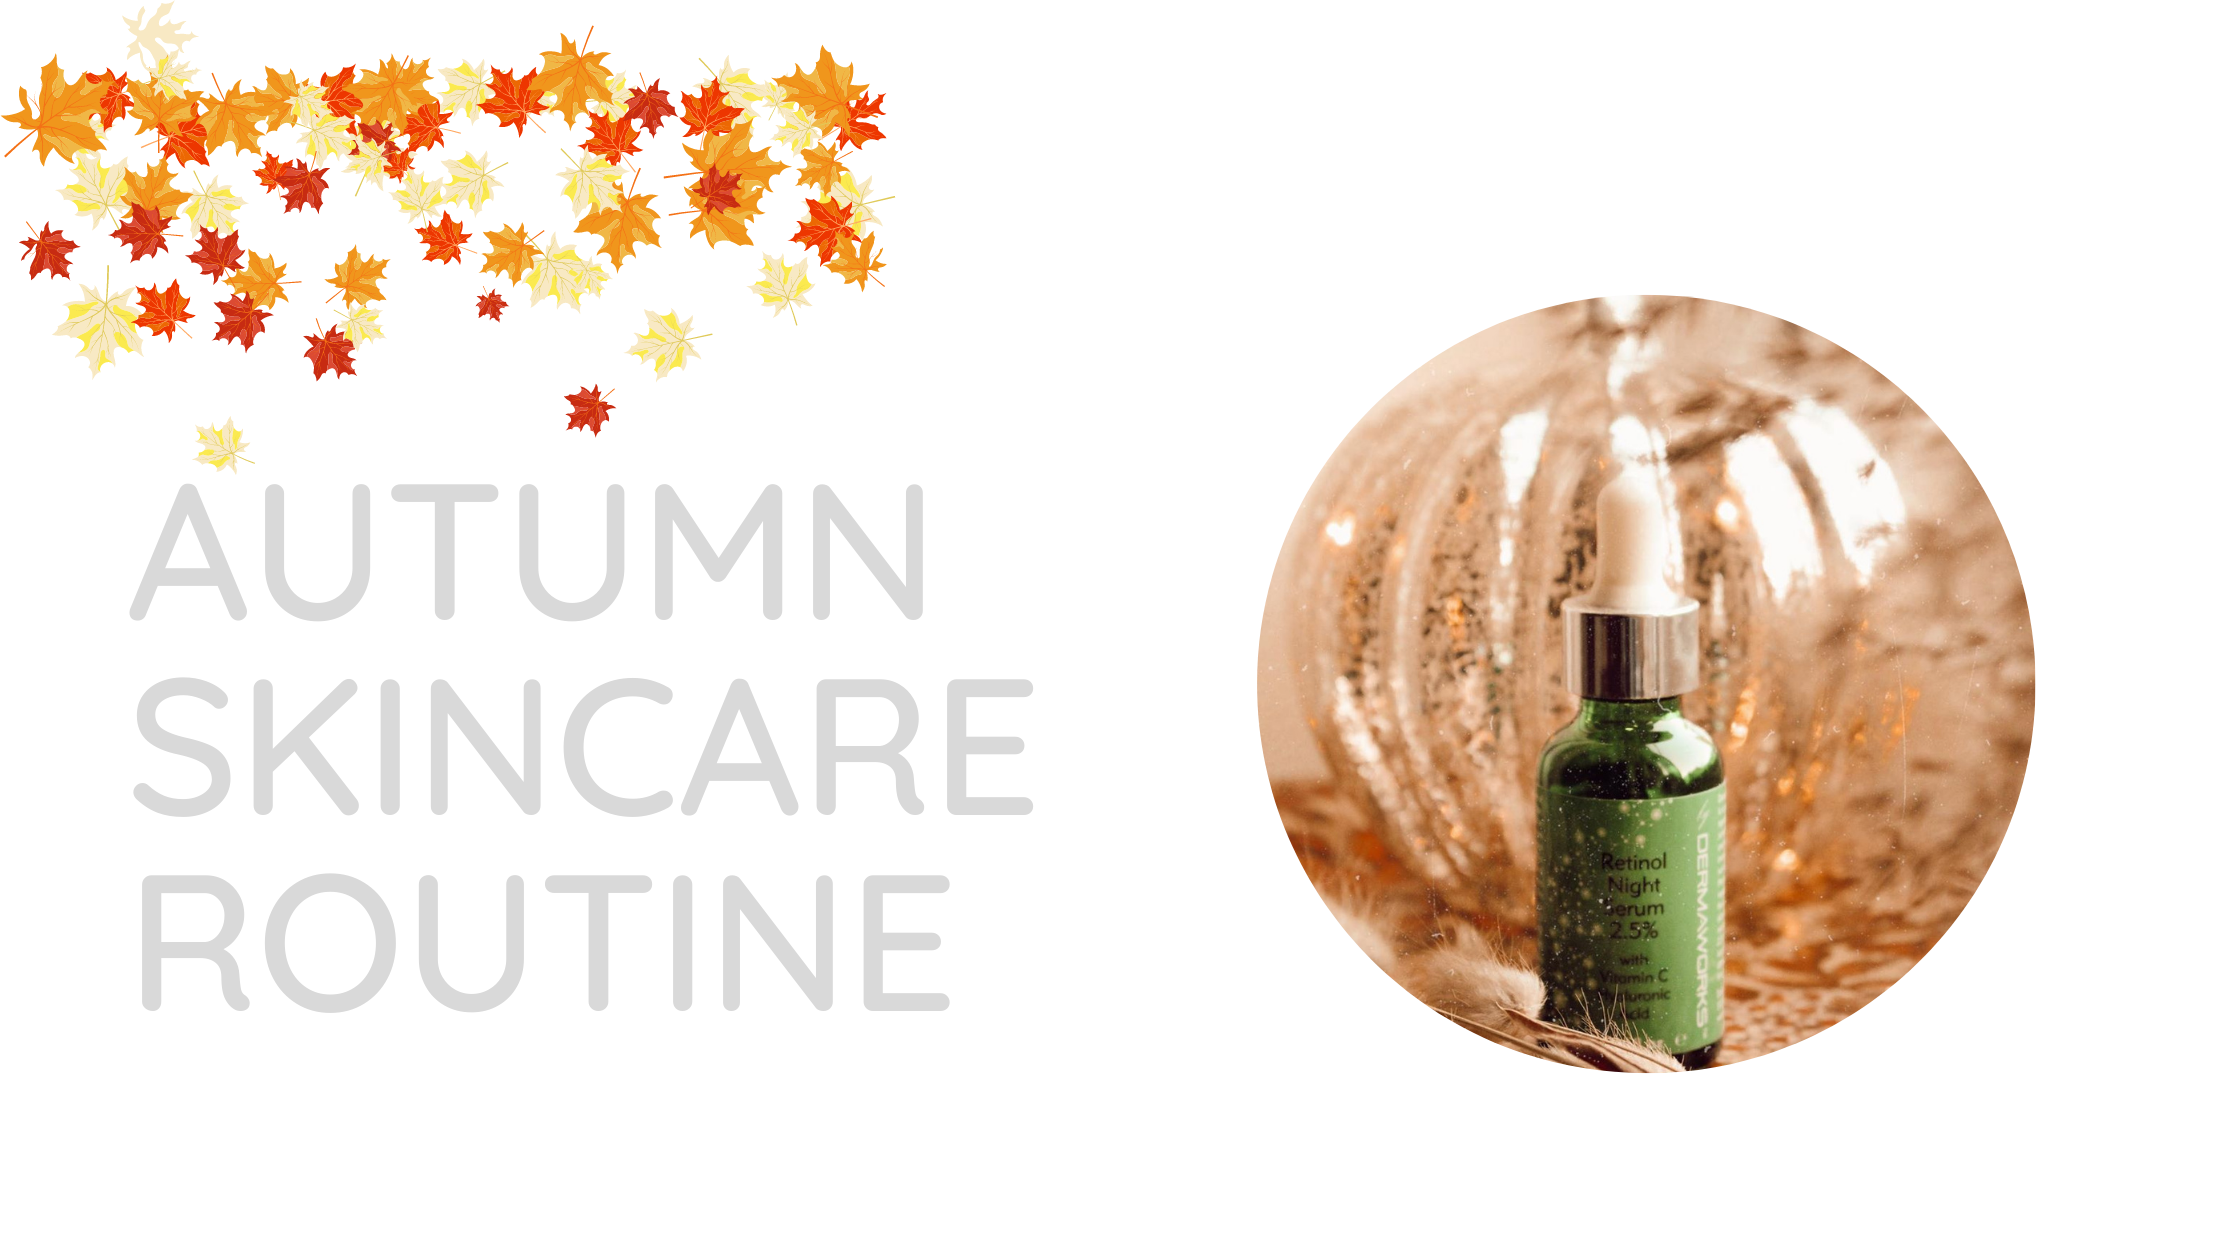 Autumn skincare routine - Dermaworks